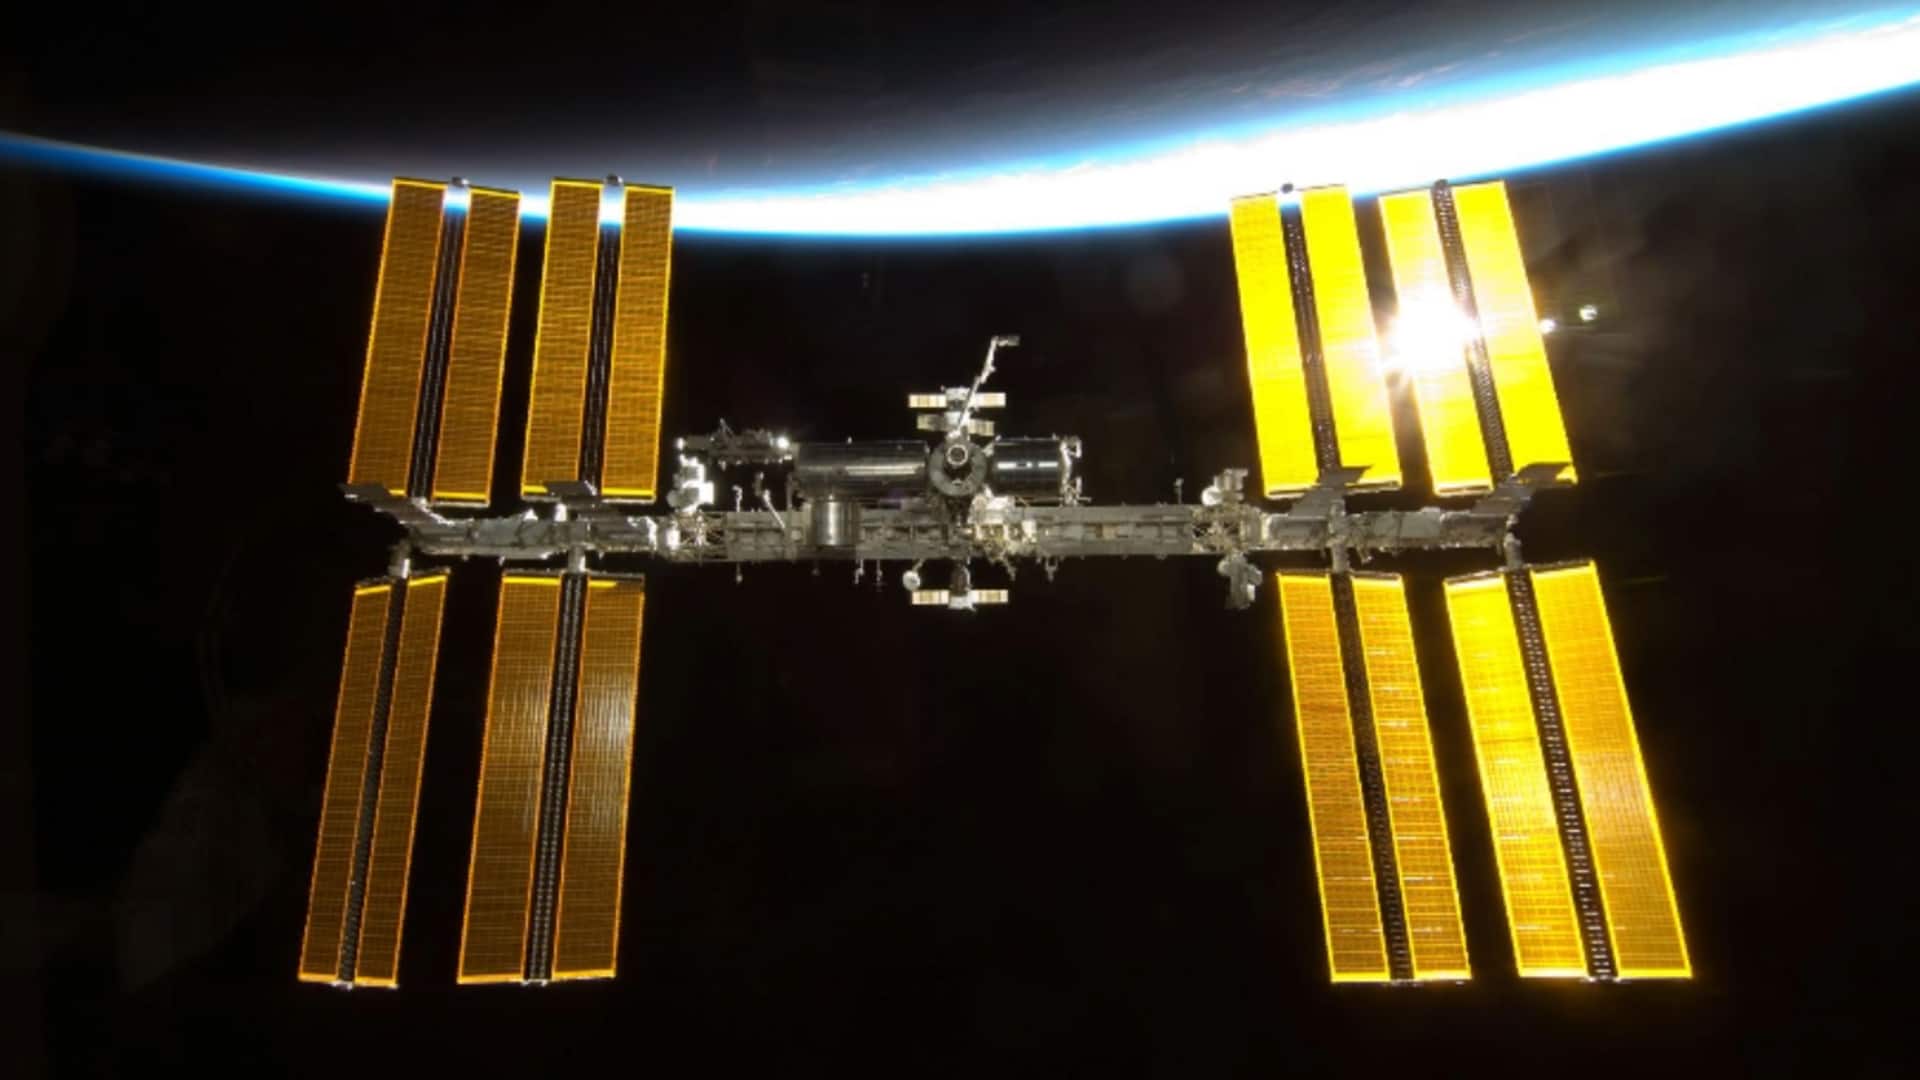 अंतरिक्ष स्टेशन क्या होते हैं, ये किस काम आते हैं और अभी कितने स्टेशन हैं?